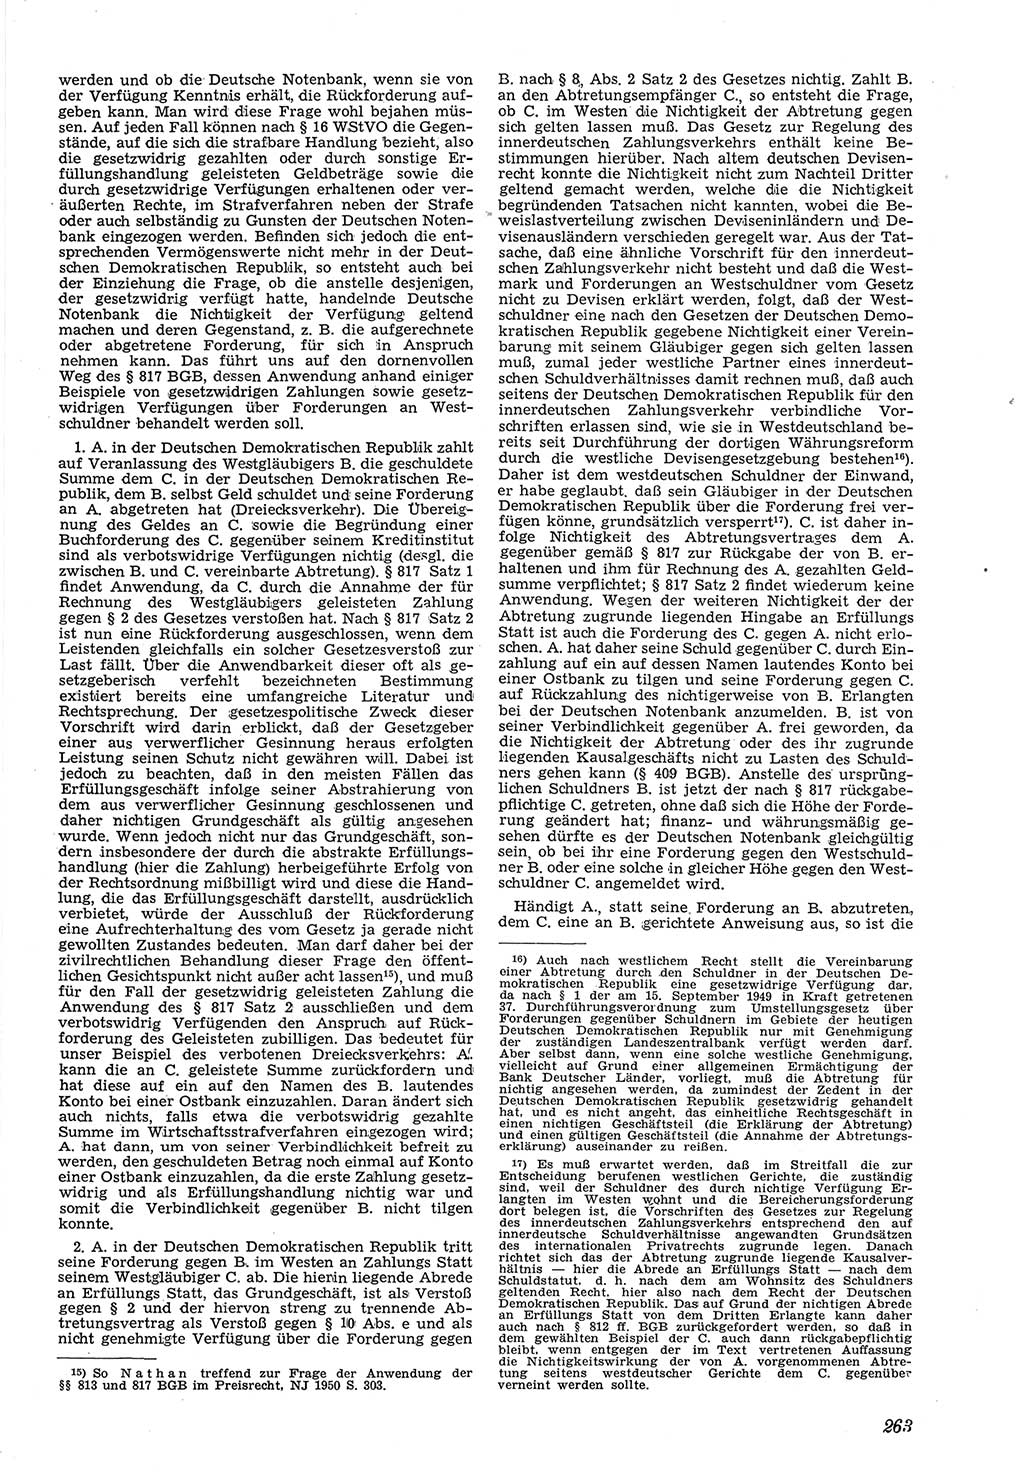 Neue Justiz (NJ), Zeitschrift für Recht und Rechtswissenschaft [Deutsche Demokratische Republik (DDR)], 5. Jahrgang 1951, Seite 263 (NJ DDR 1951, S. 263)